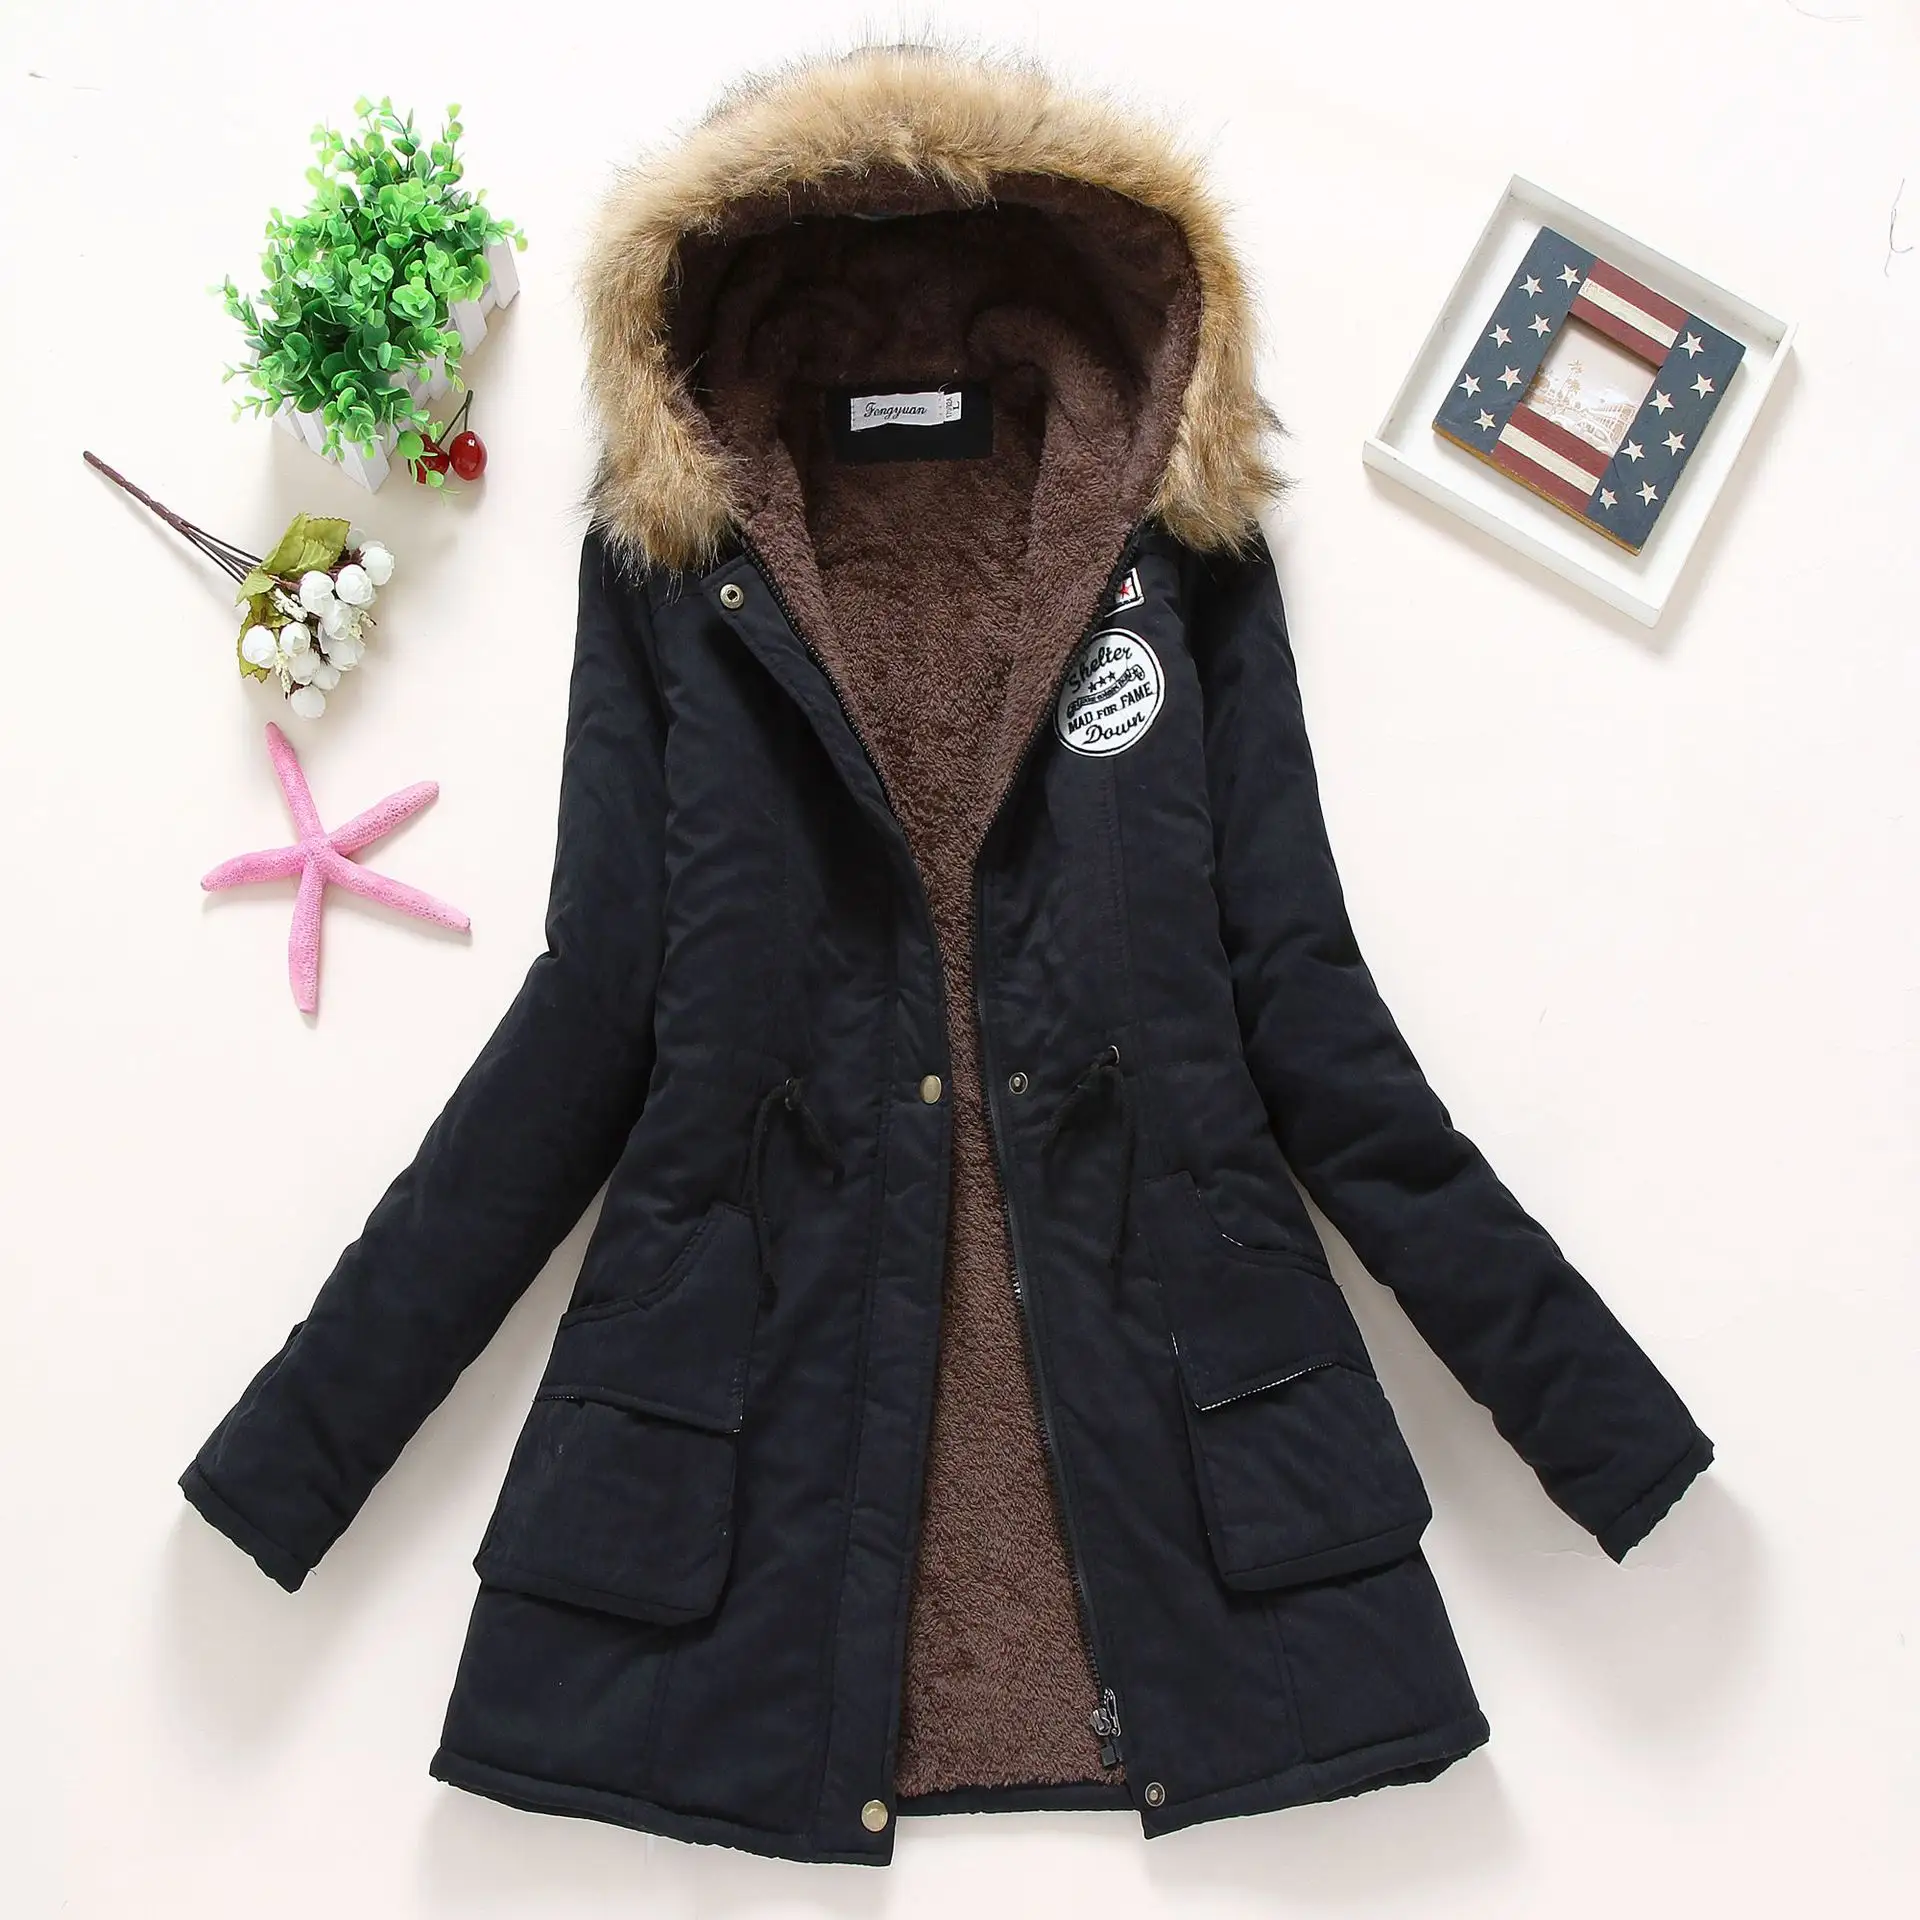 Hot Selling Women's Thicken Fleece Faux Fur Warm Winter Coat Hood Parka Overcoat Long Jacket